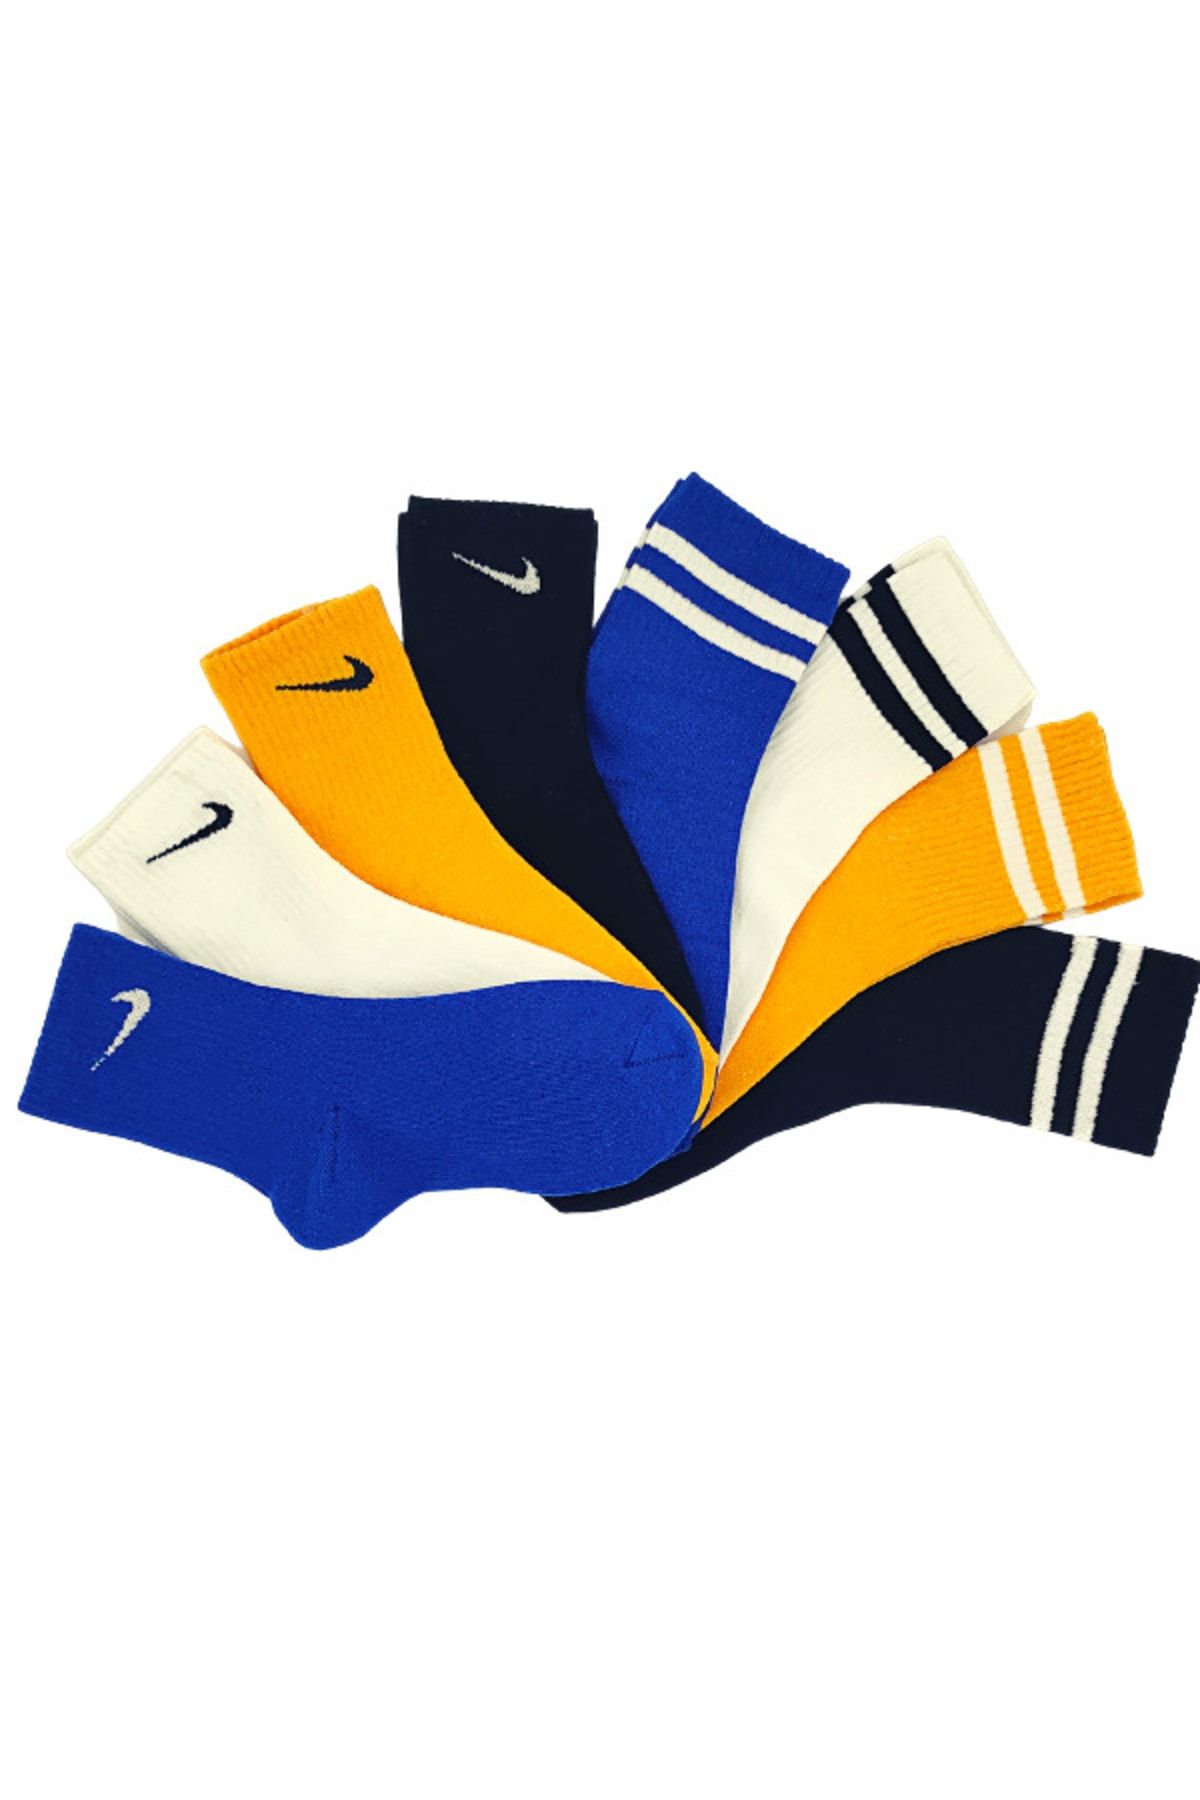 Genel Markalar 8'li Unisex Mavi Sarı Beyaz Siyah Çift Çizgi Spor Tenis Futbol Basketbol Koşu Soket Çorap Seti